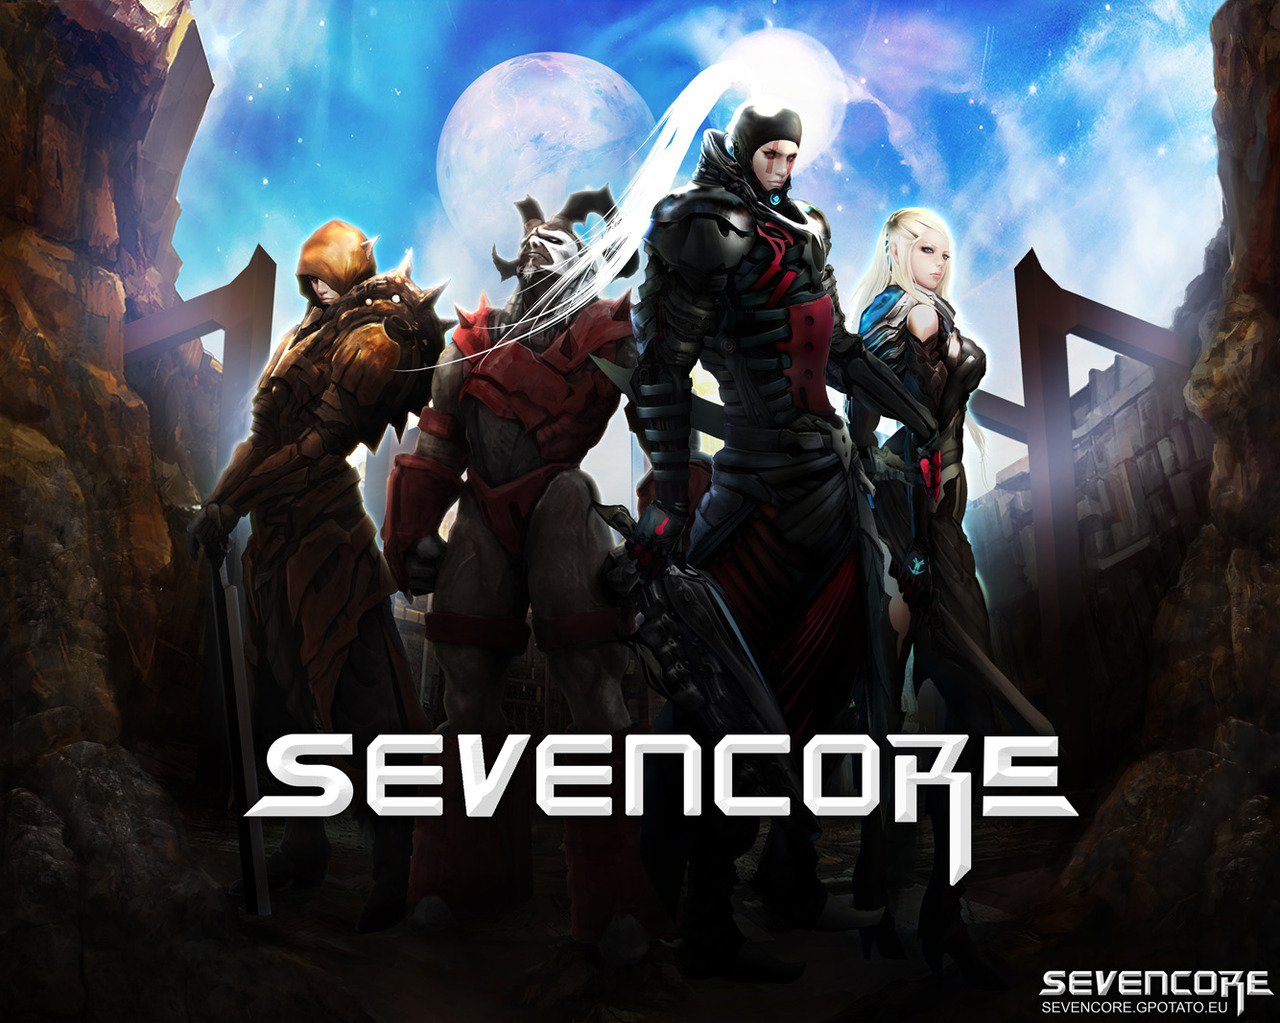 Sevencore